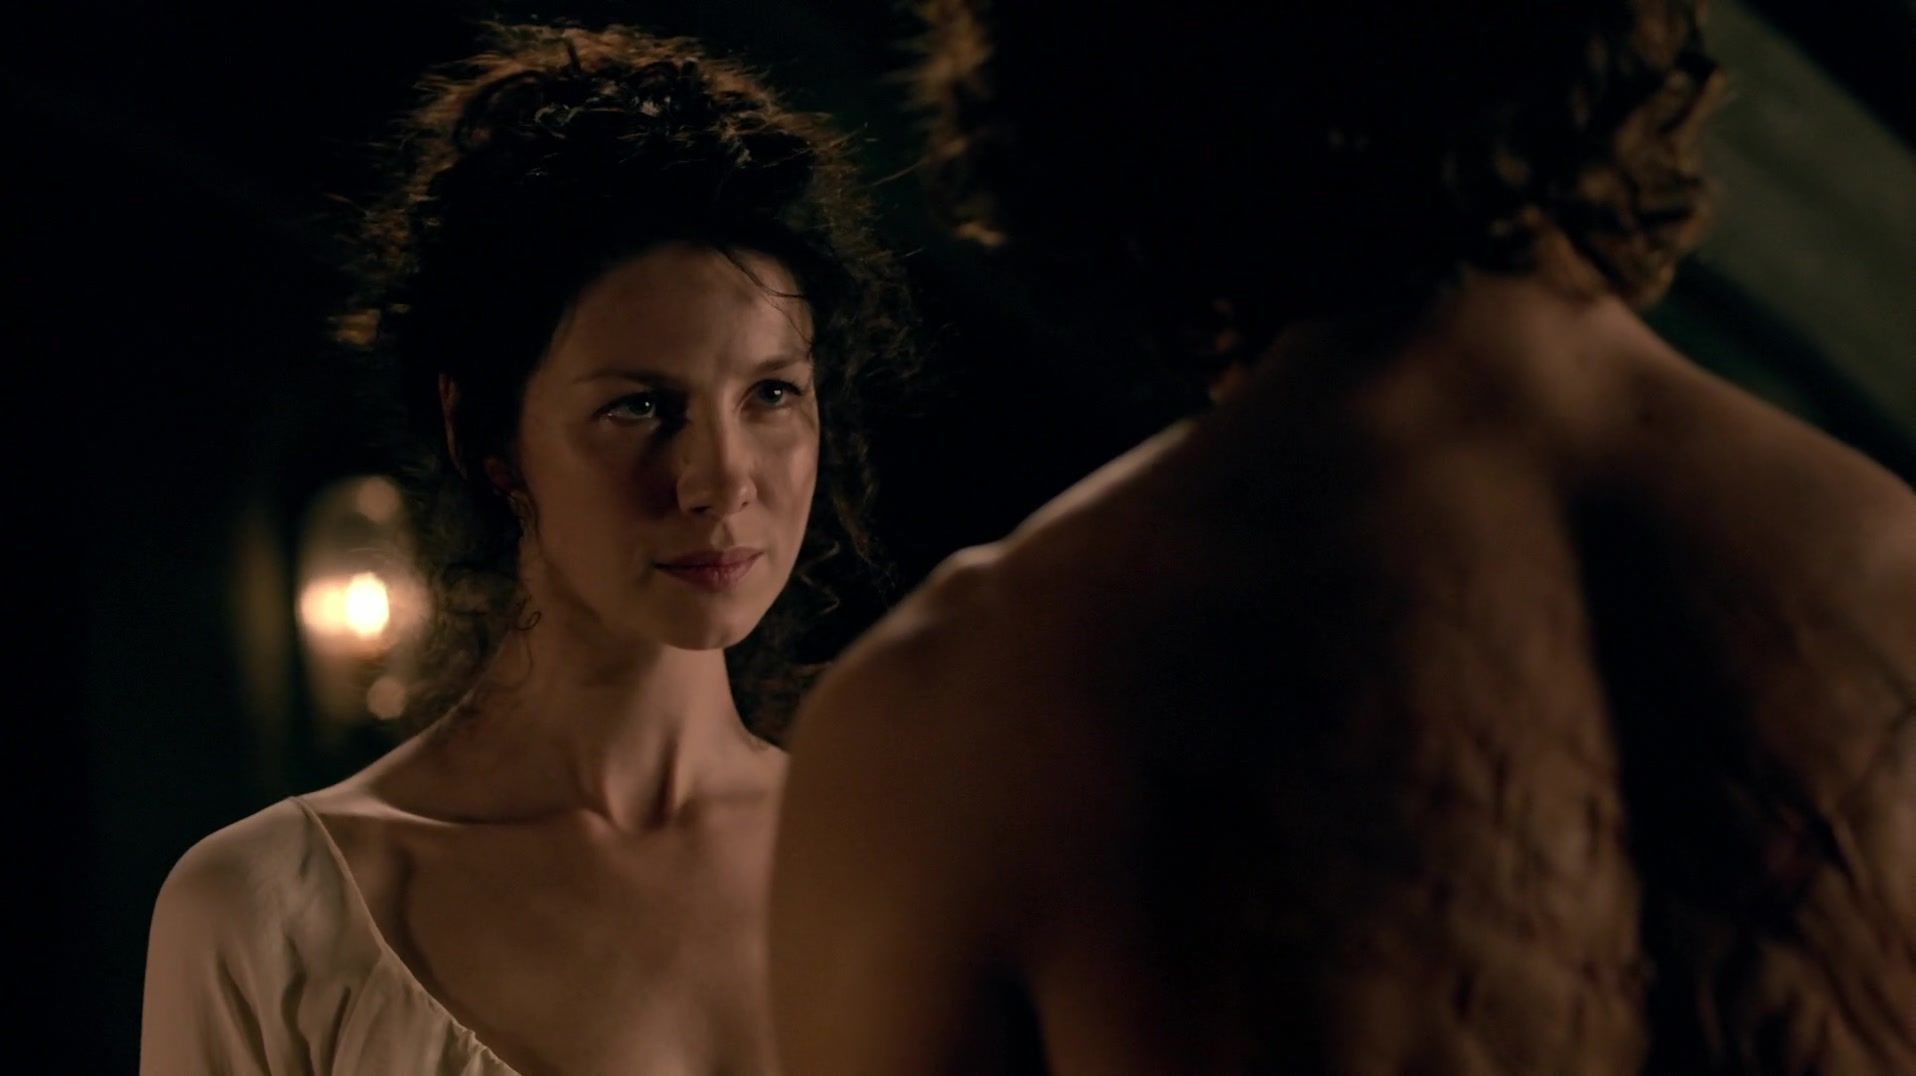 Siririca Sex scene of naked Caitriona Balfe | TV show "Outlander" Hard Fuck - 2